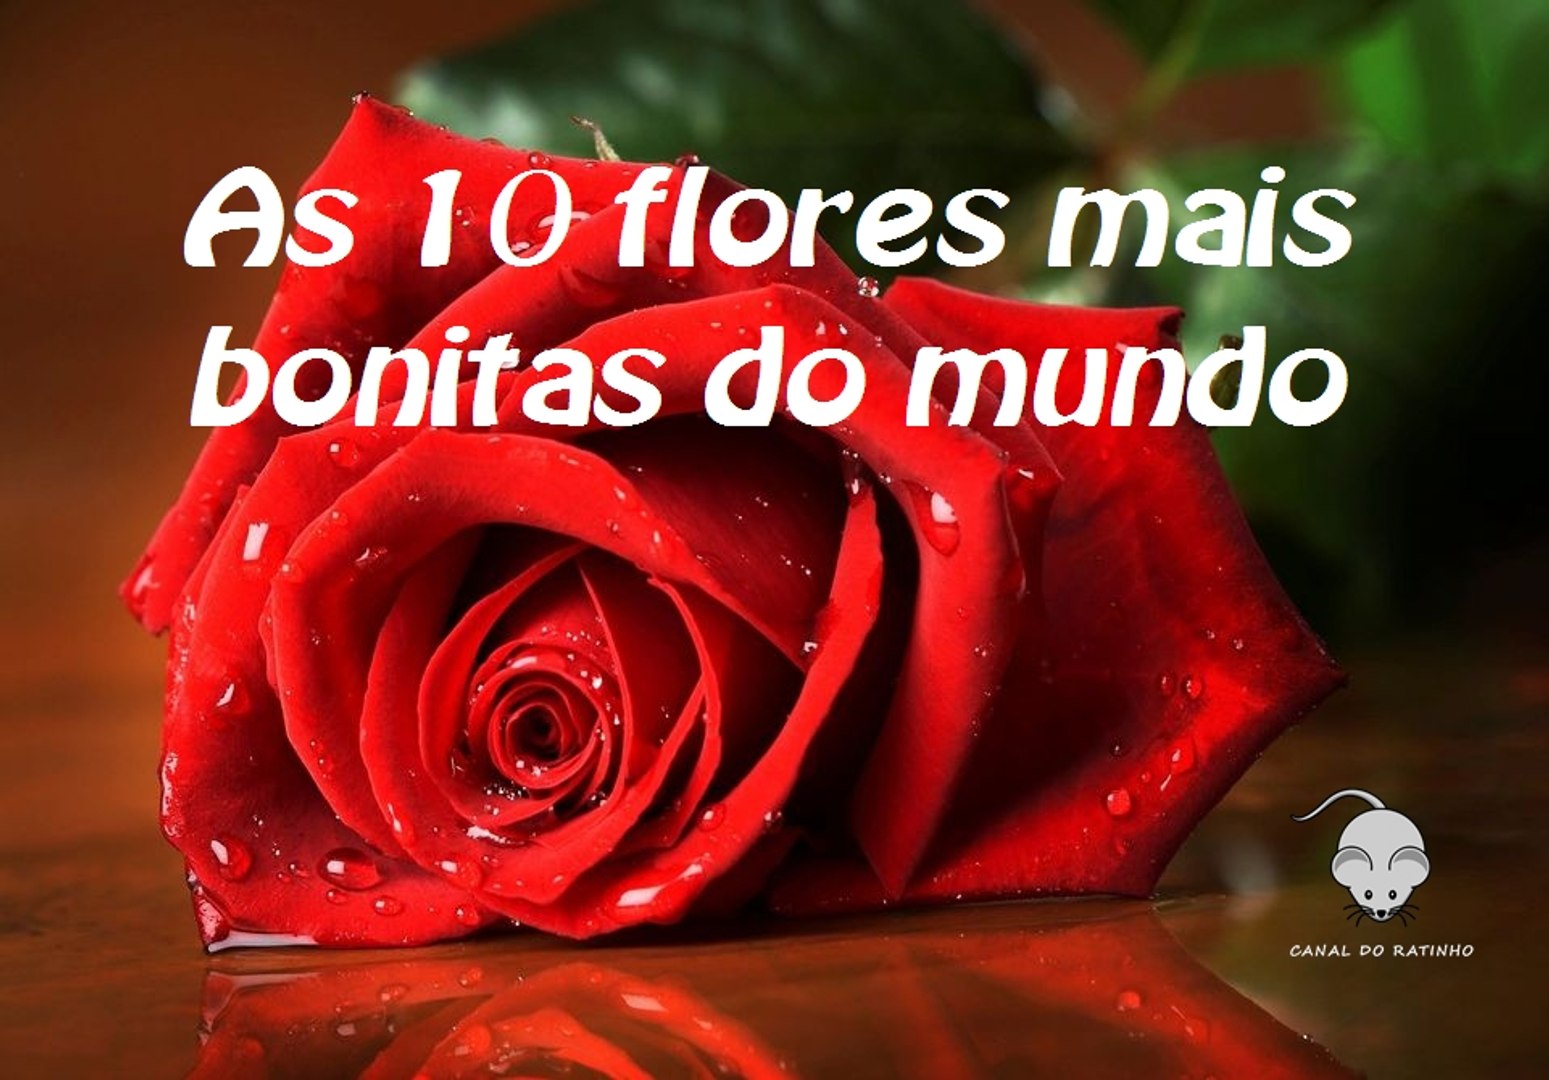 As 10 flores mais bonitas do mundo - Vídeo Dailymotion